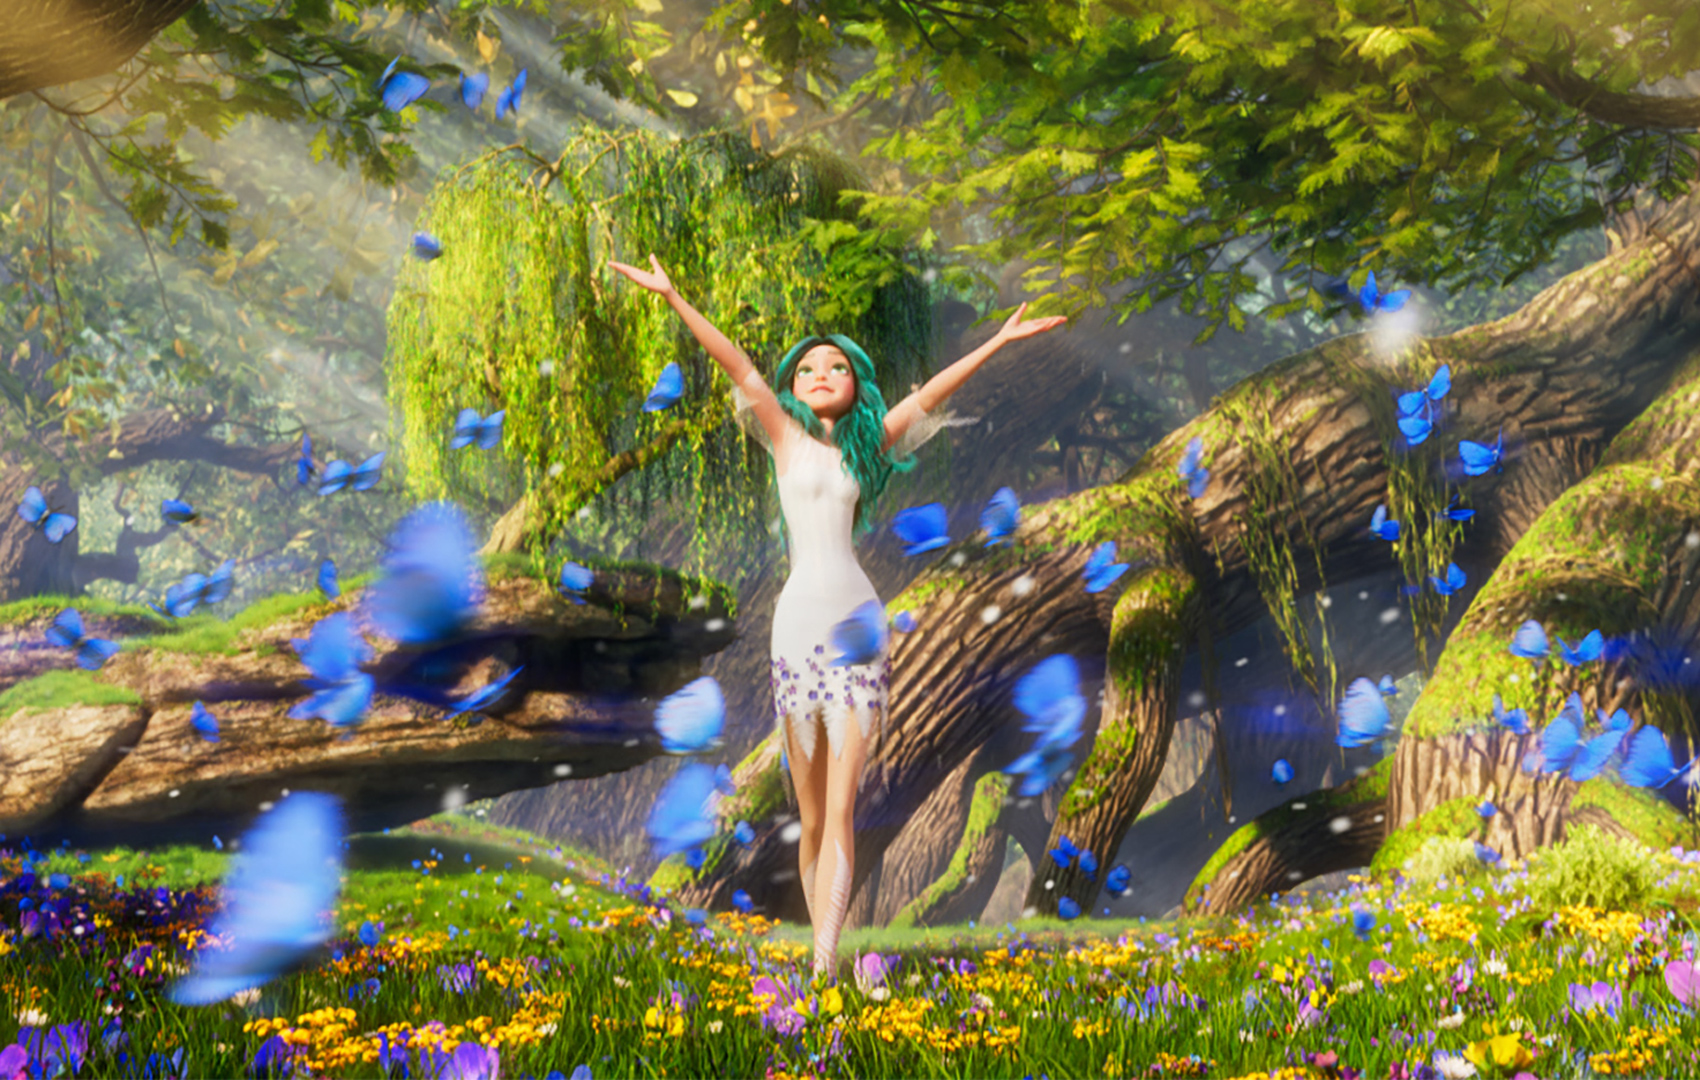 Animationsfilm: Ein Mädchen steht mit erhobenen, ausgebreiteten Armen auf einer Blumenwiese im Wald. Blaue Schmetterlinge schweben um sie herum.